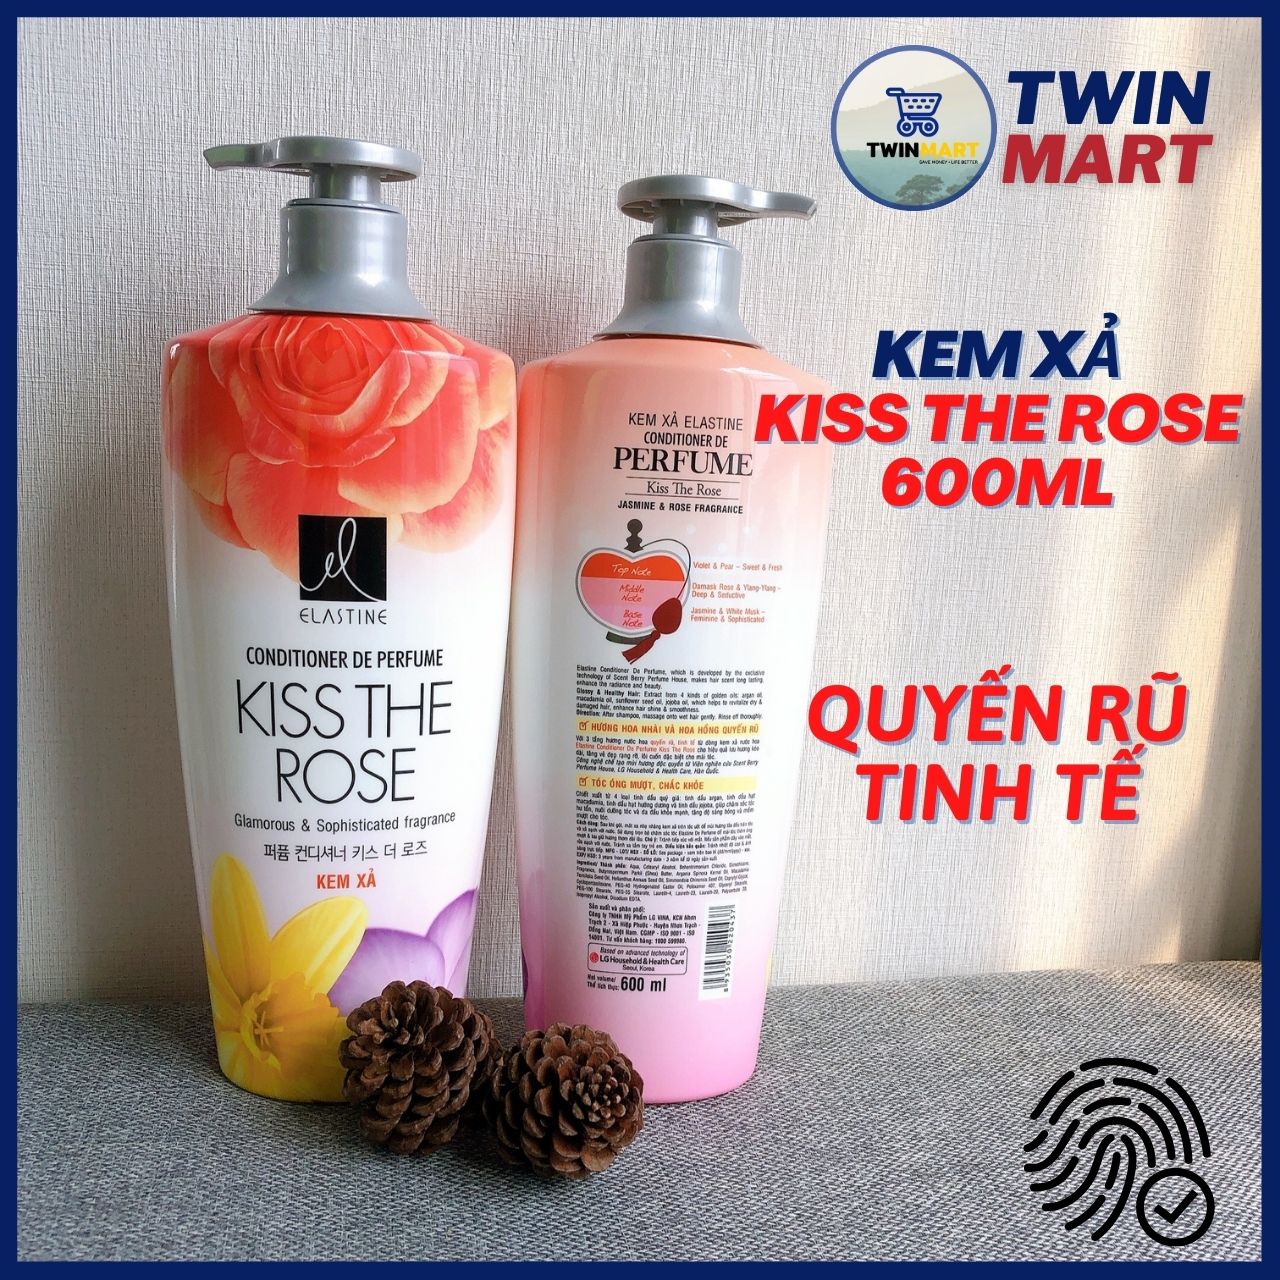 [1000ml - 600ml] DATE XA 2024 TPHCM Kem Xả Elastine hương nước hoa Hàn Quốc - Pure Breeze - Love...